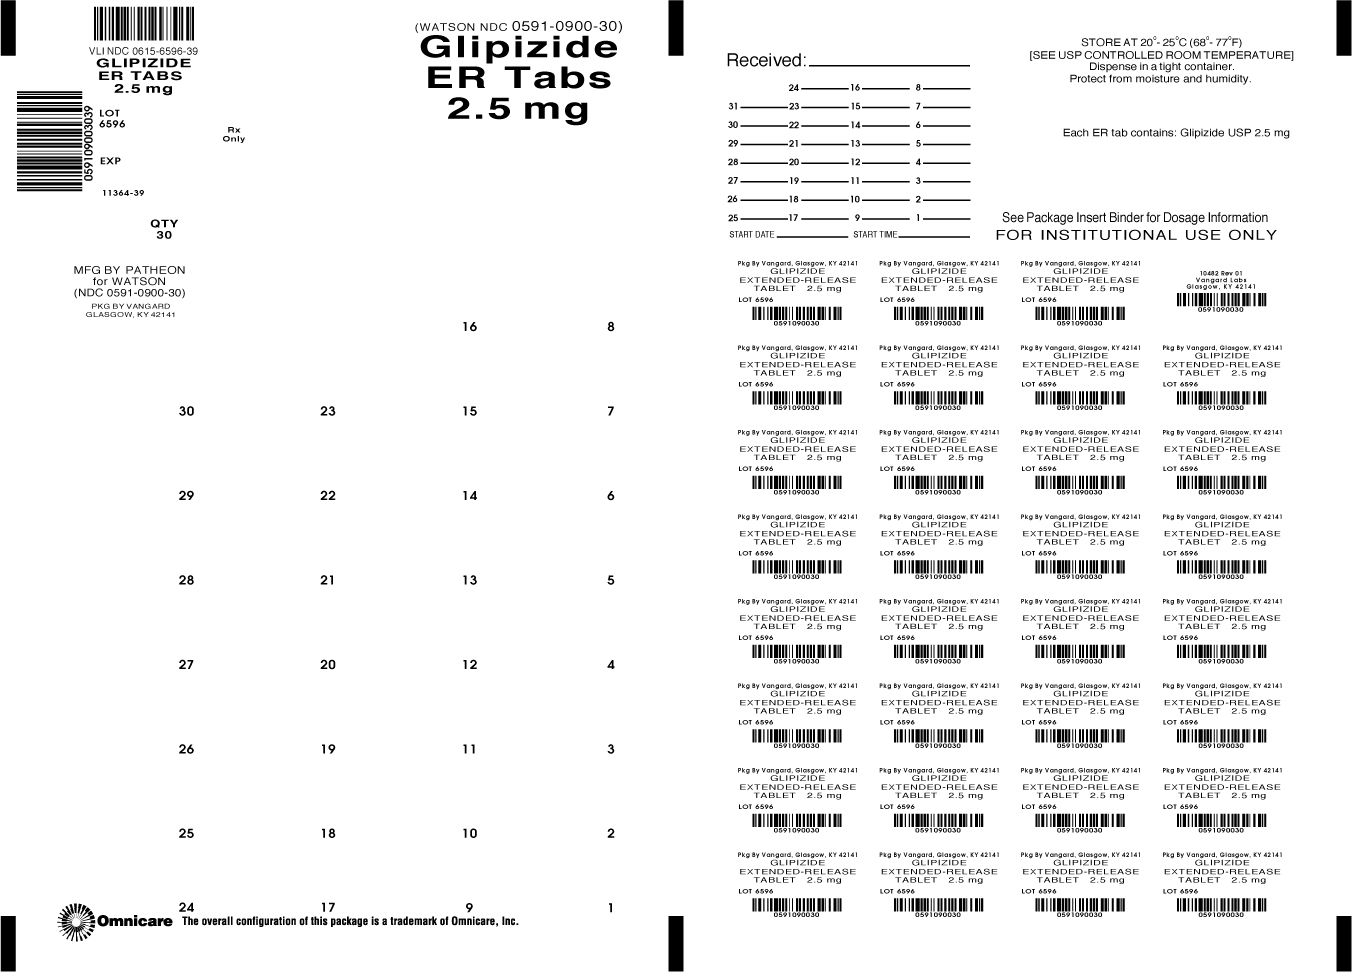 Principal Display Panel-Glipizide ER Tabs 2.5mg